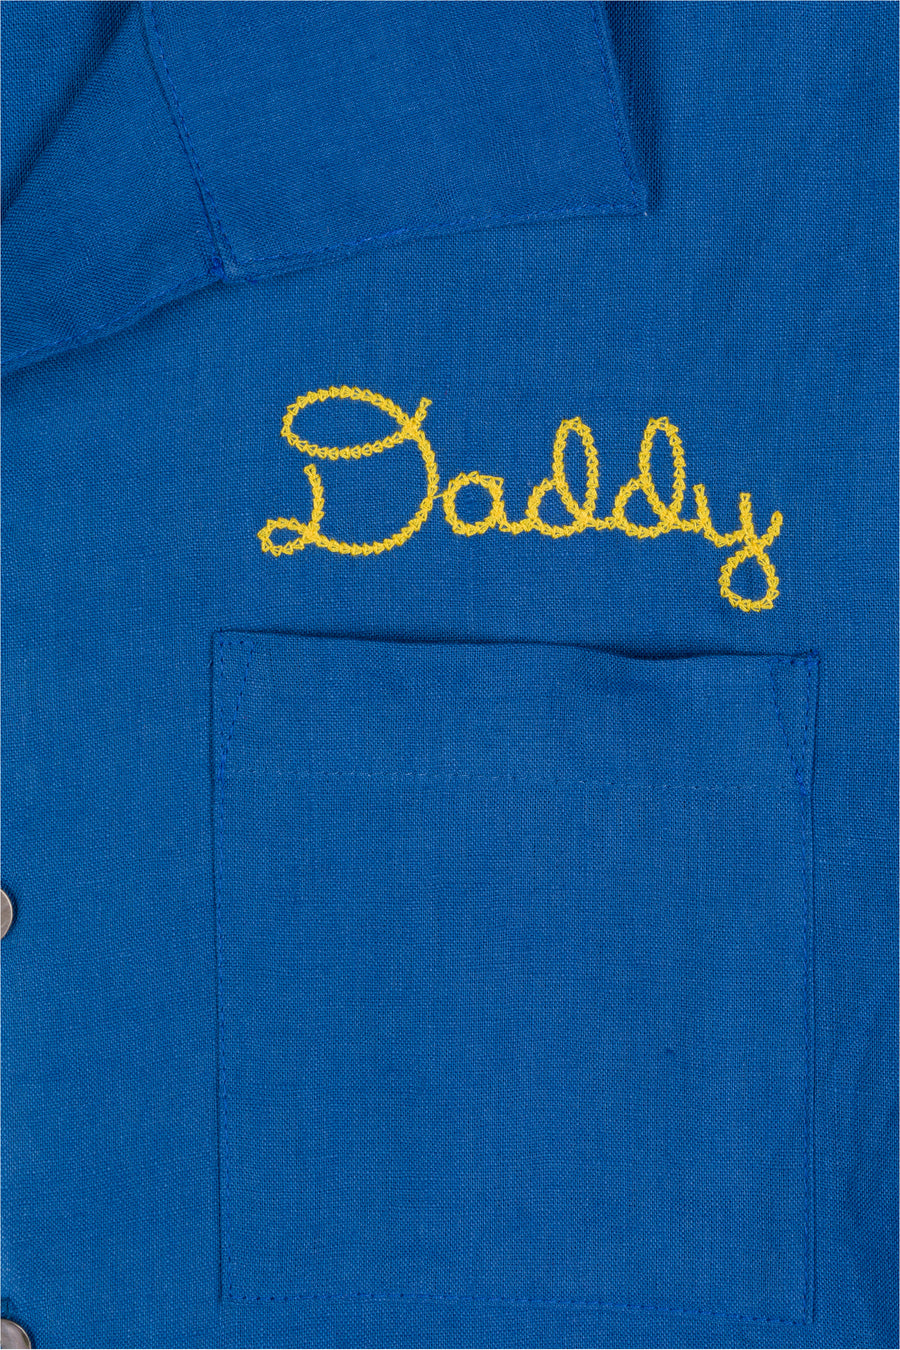 Unisex Daddy Bowling Shirt Blue Linen